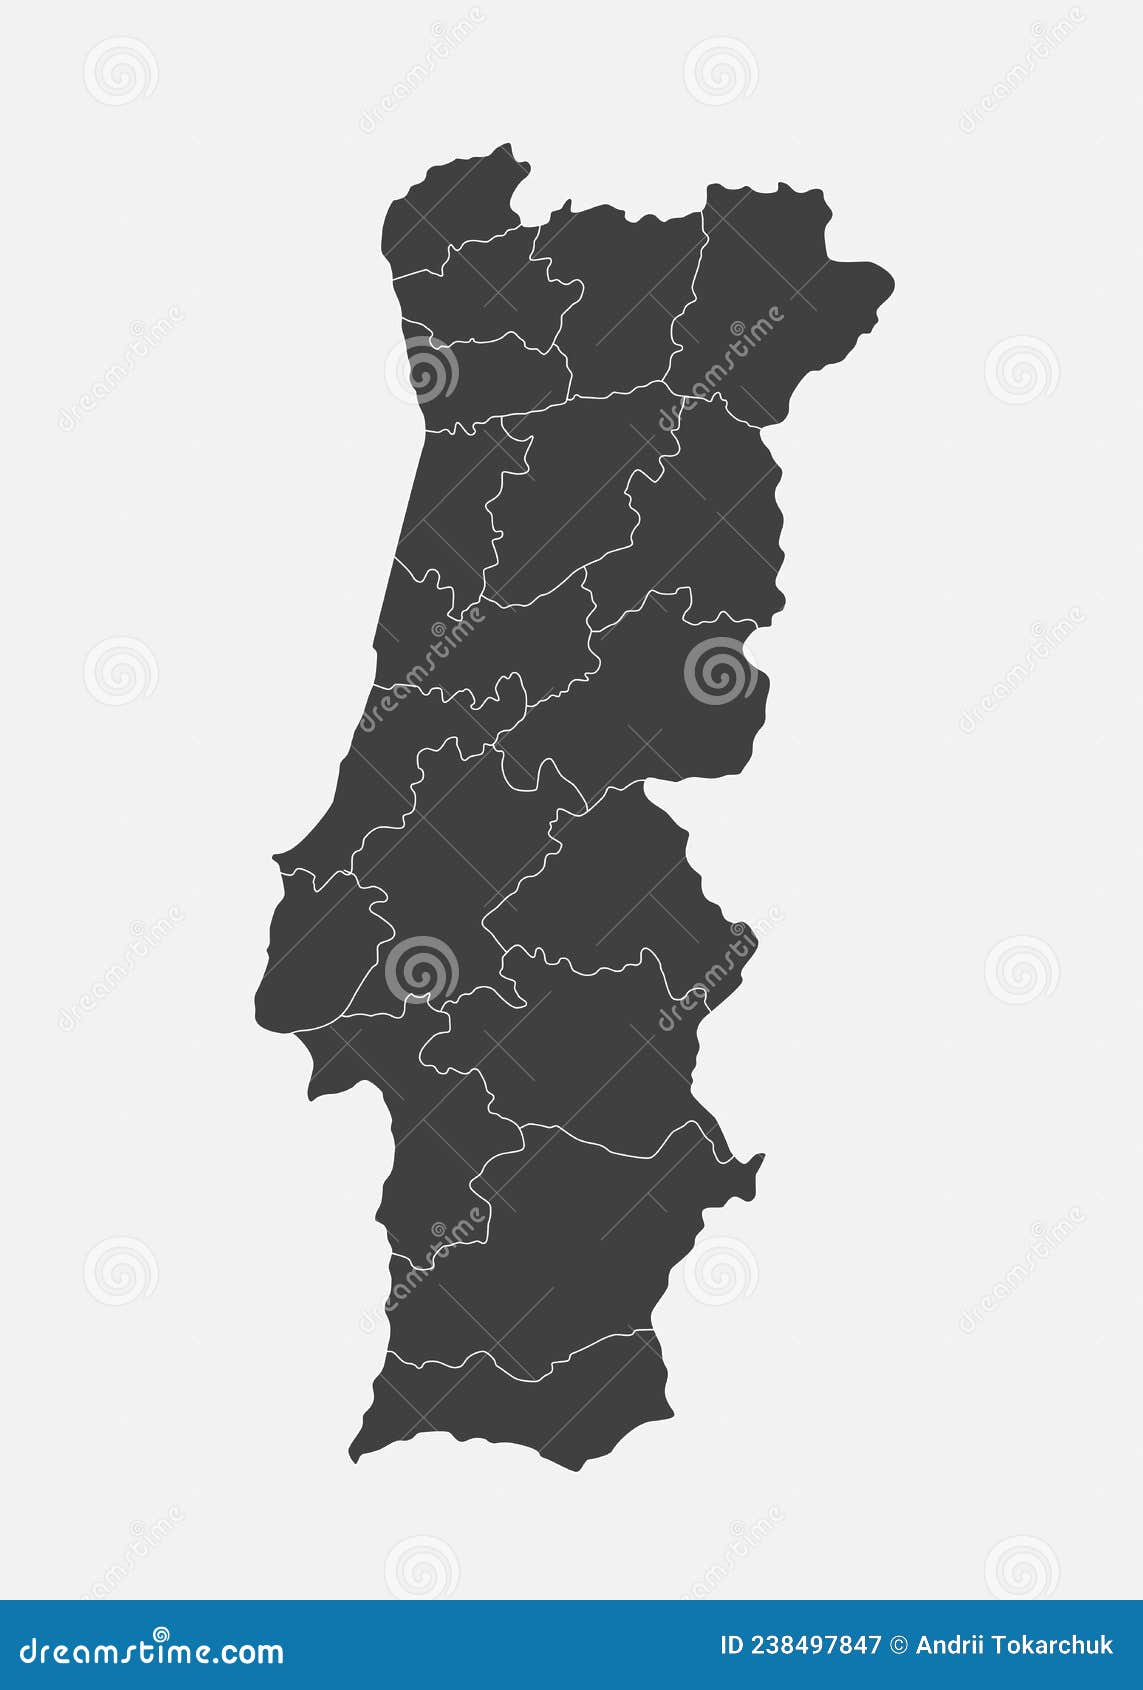 Mapa Detalhado De Portugal Com Divisões Administrativas Em Regiões